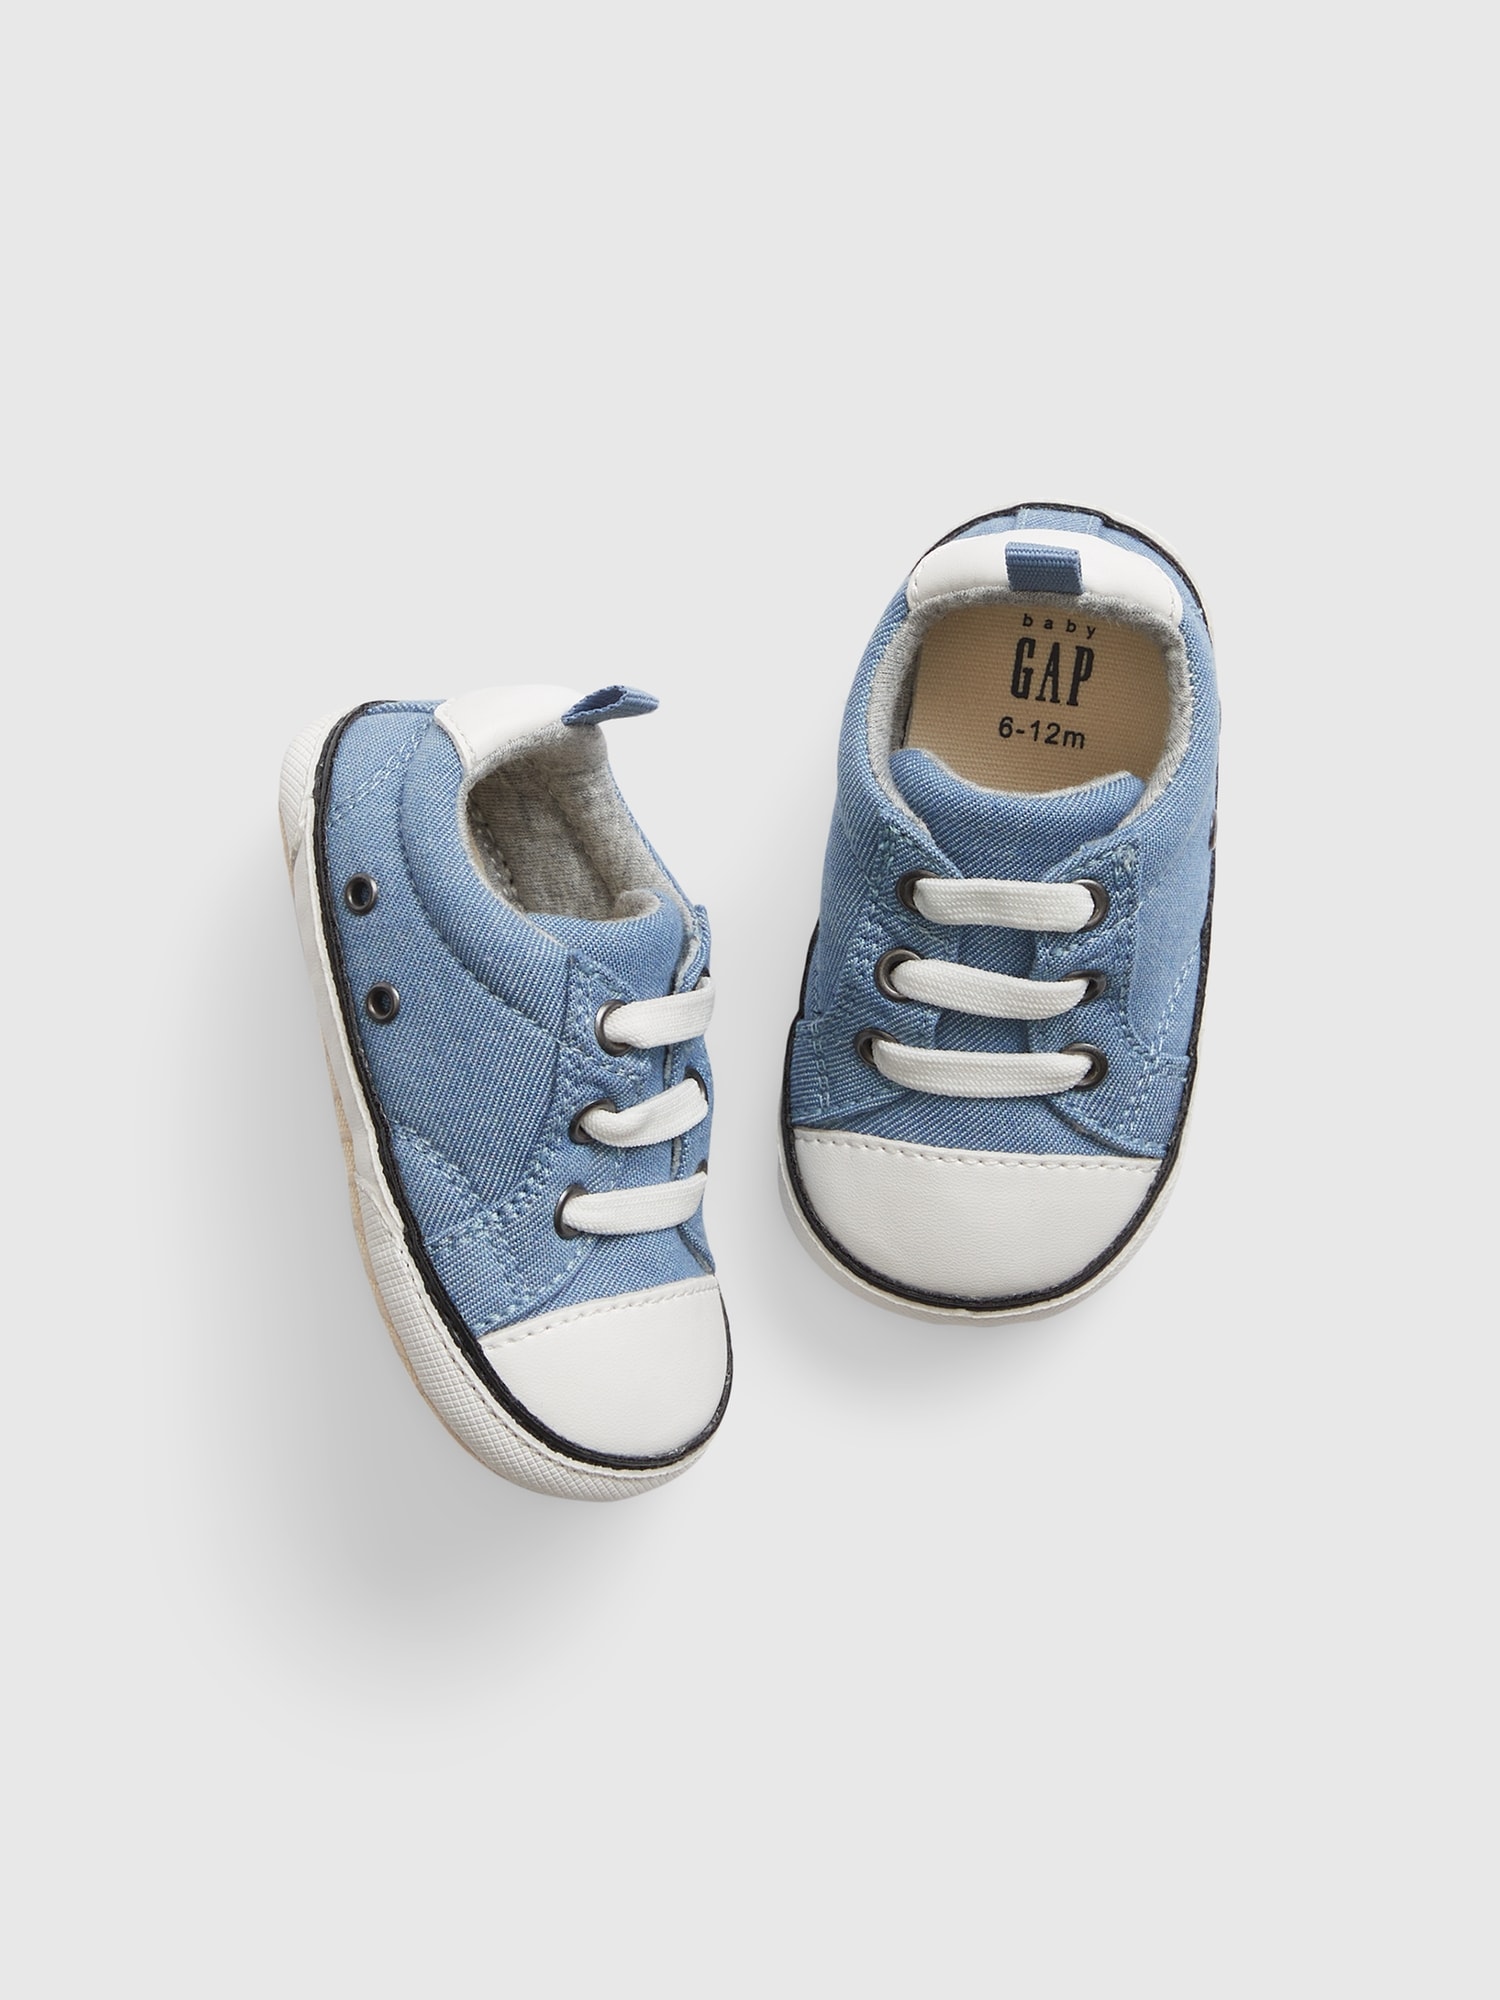 Gap Baby Slip-On Sneakers blue. 1